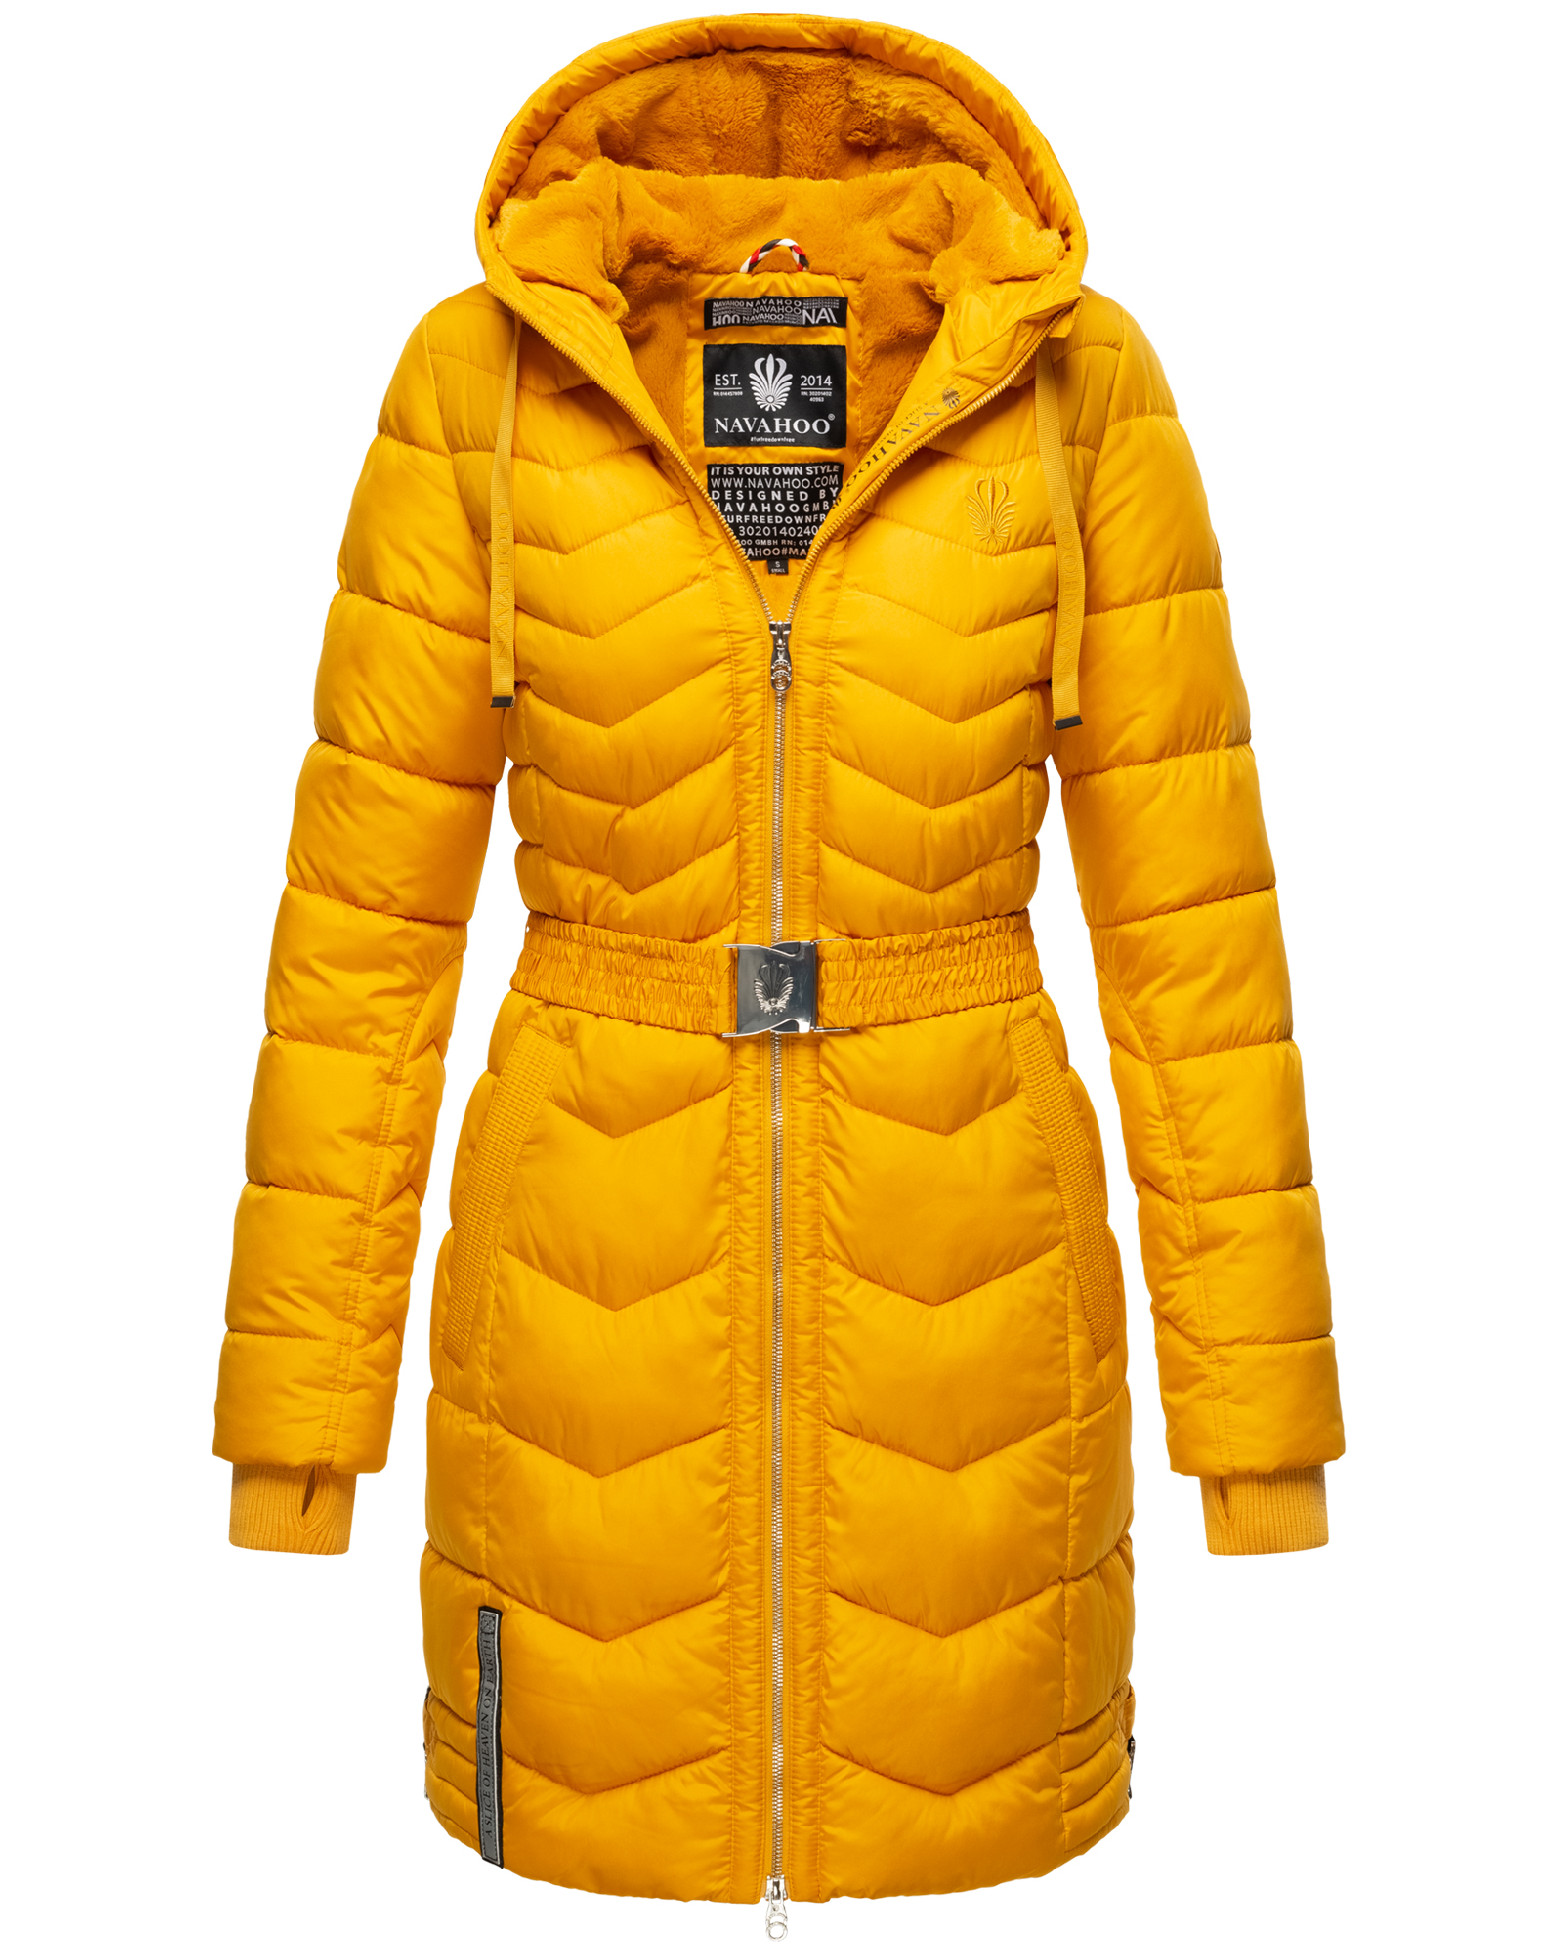 Dámský zimní prošívaný kabát Alpenveilchen Navahoo - YELLOW Velikost: XL